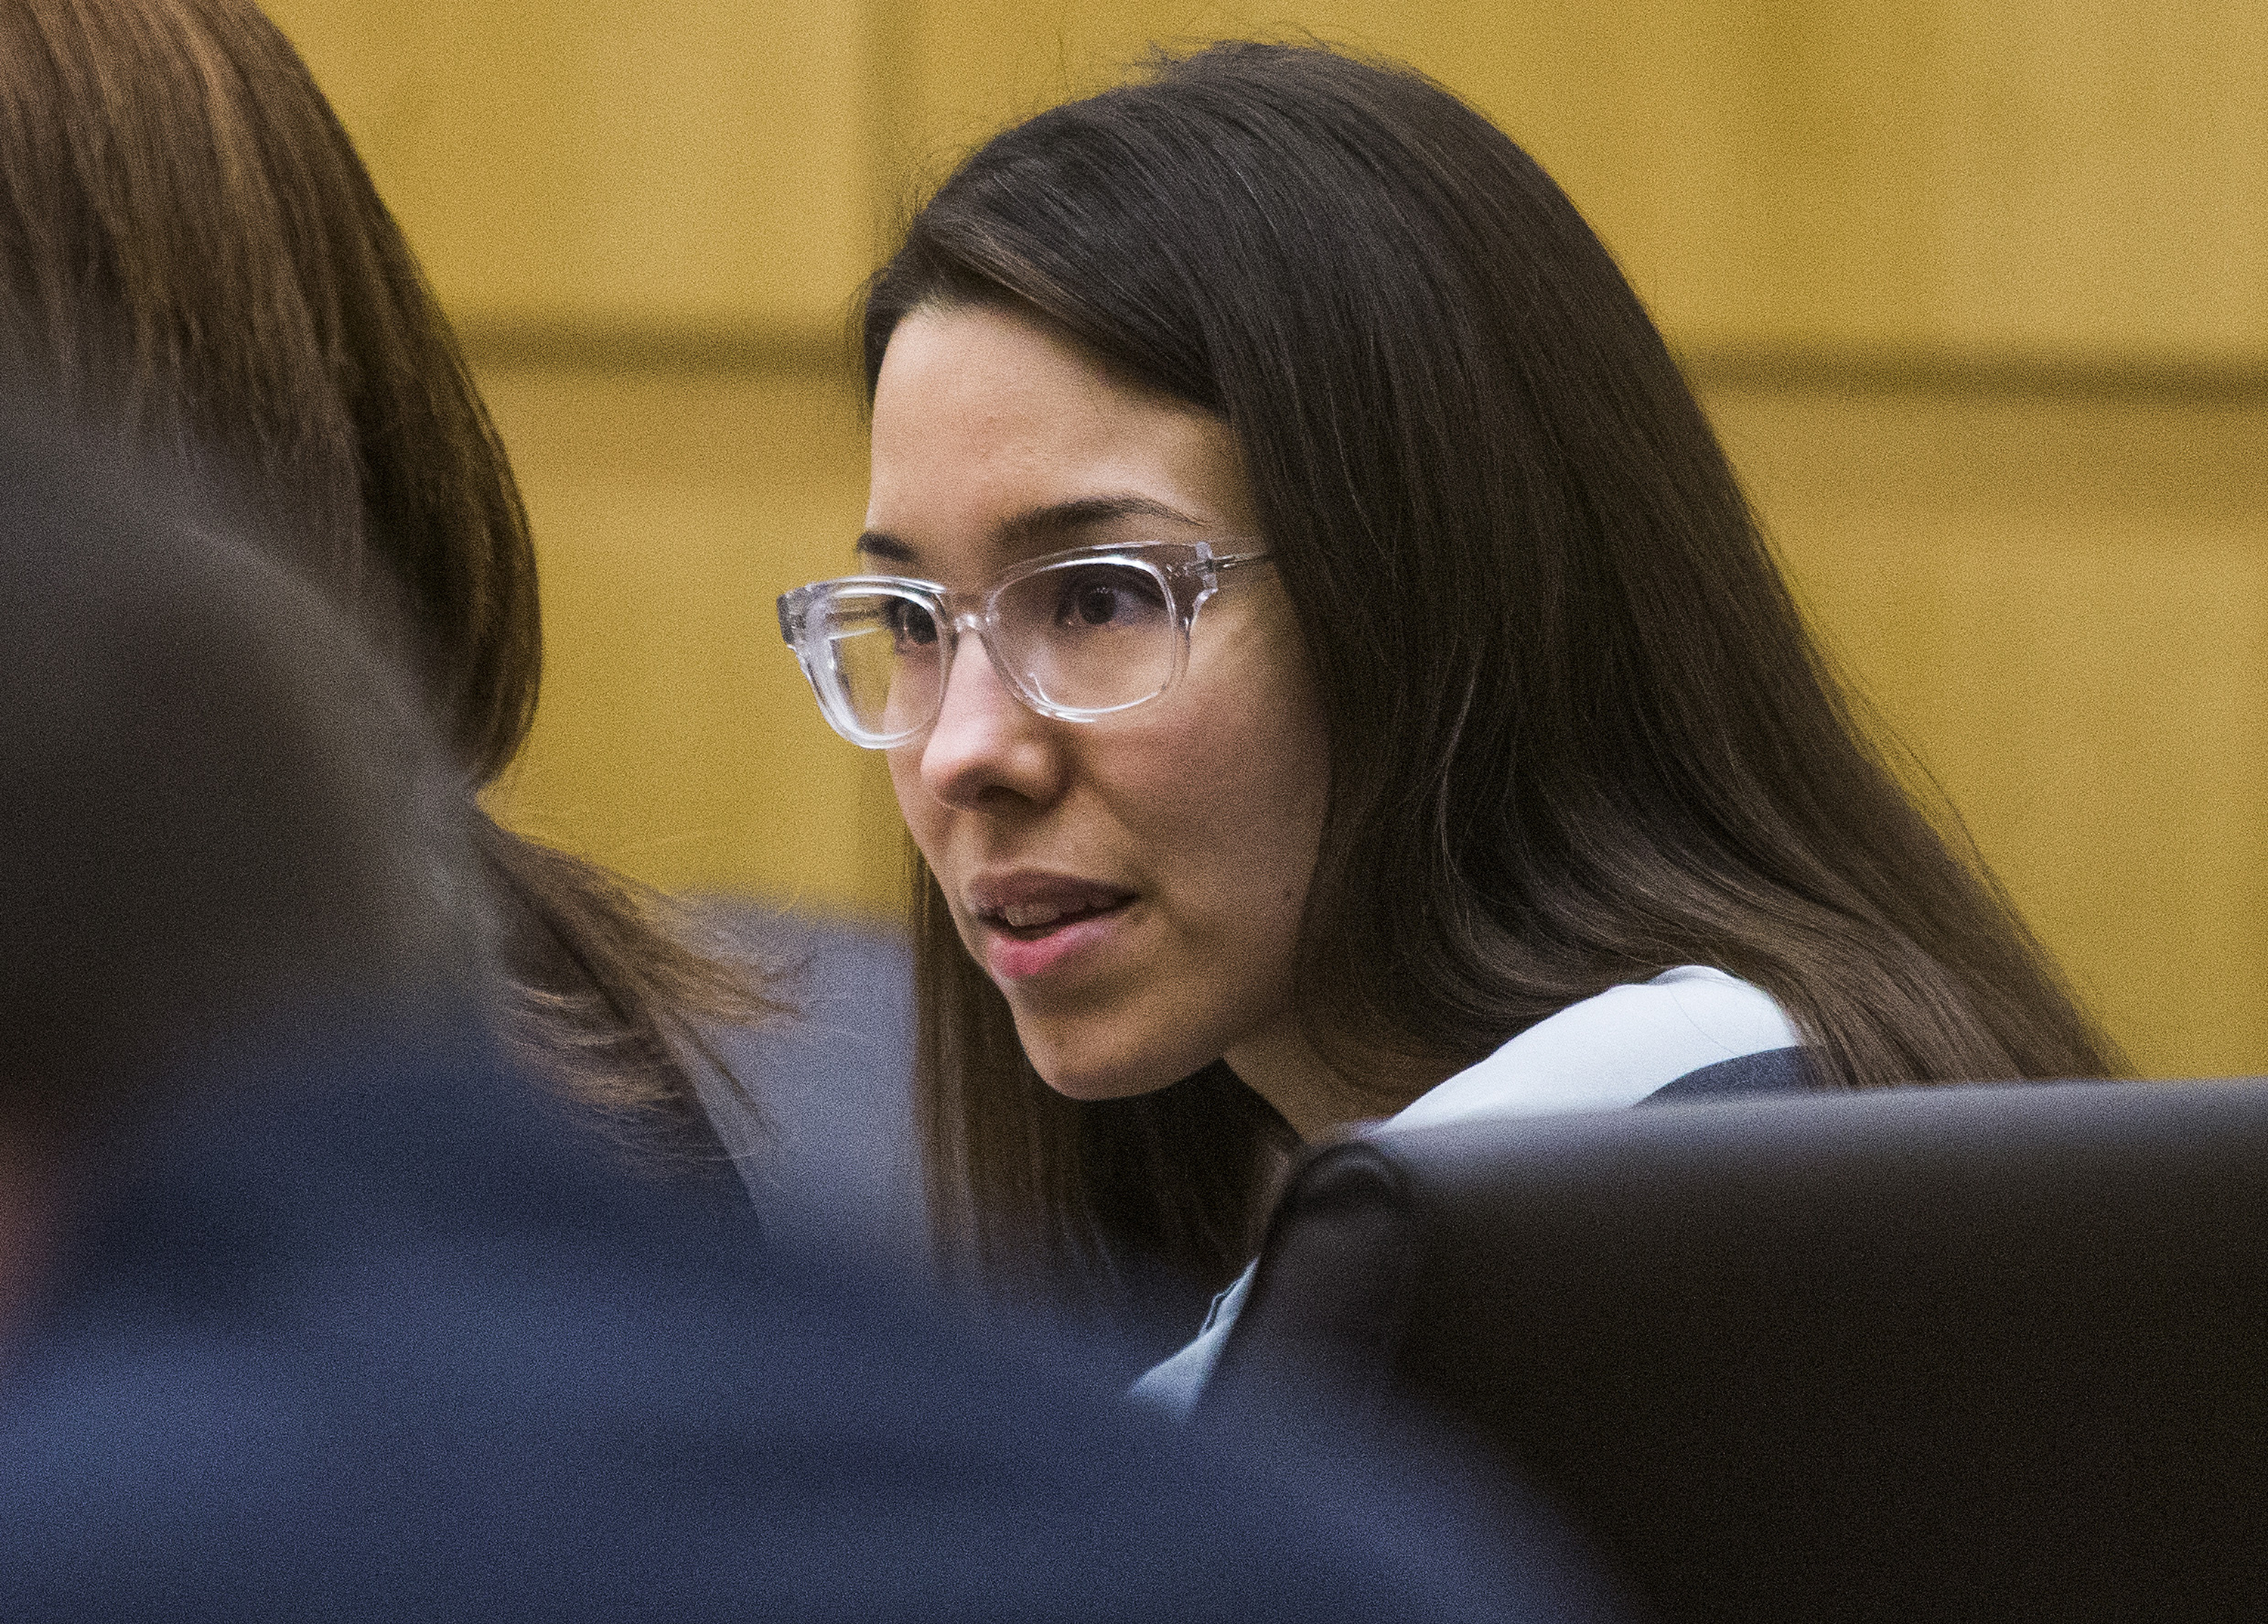 Η καταδίκη του Jodi Arias για δολοφονία θα μπορούσε να ανατραπεί λόγω της φερόμενης κακής συμπεριφοράς του εισαγγελέα